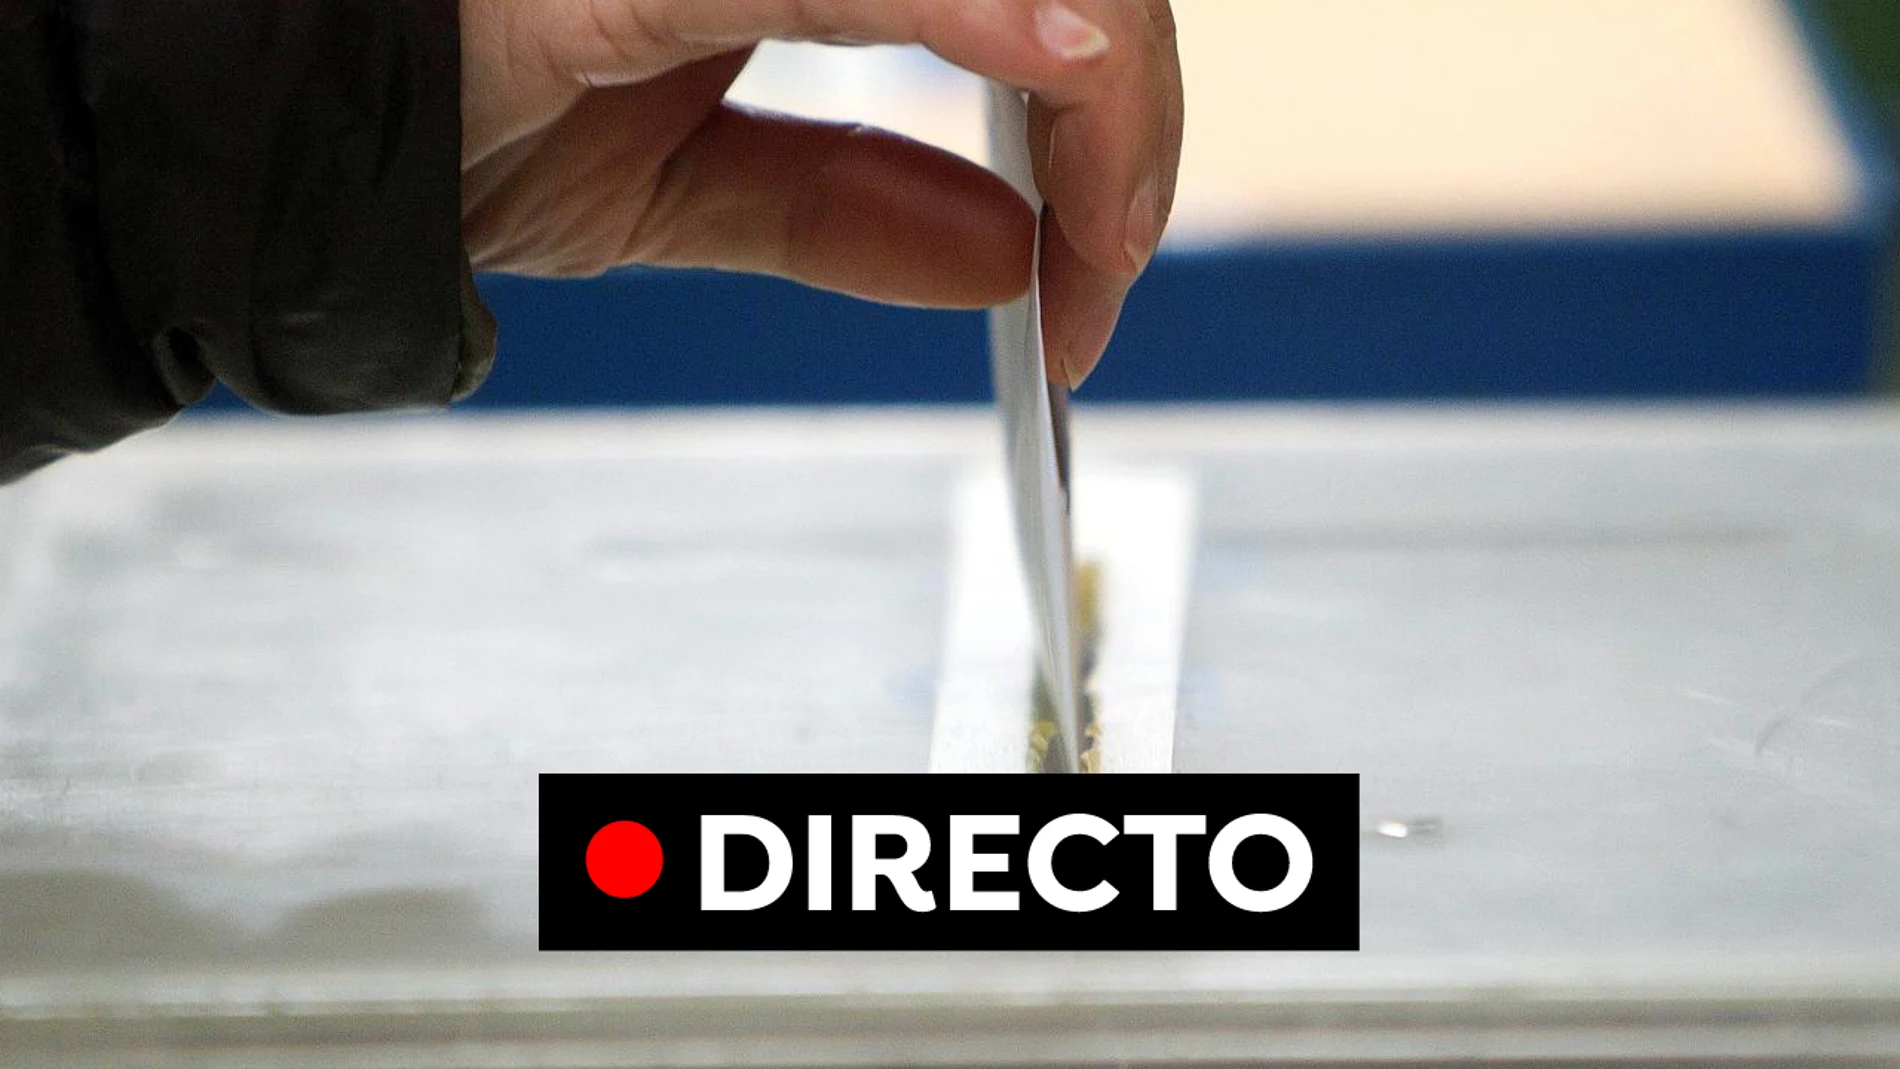 Elecciones municipales y autonómicas: Jornada de reflexión del 28M, en directo